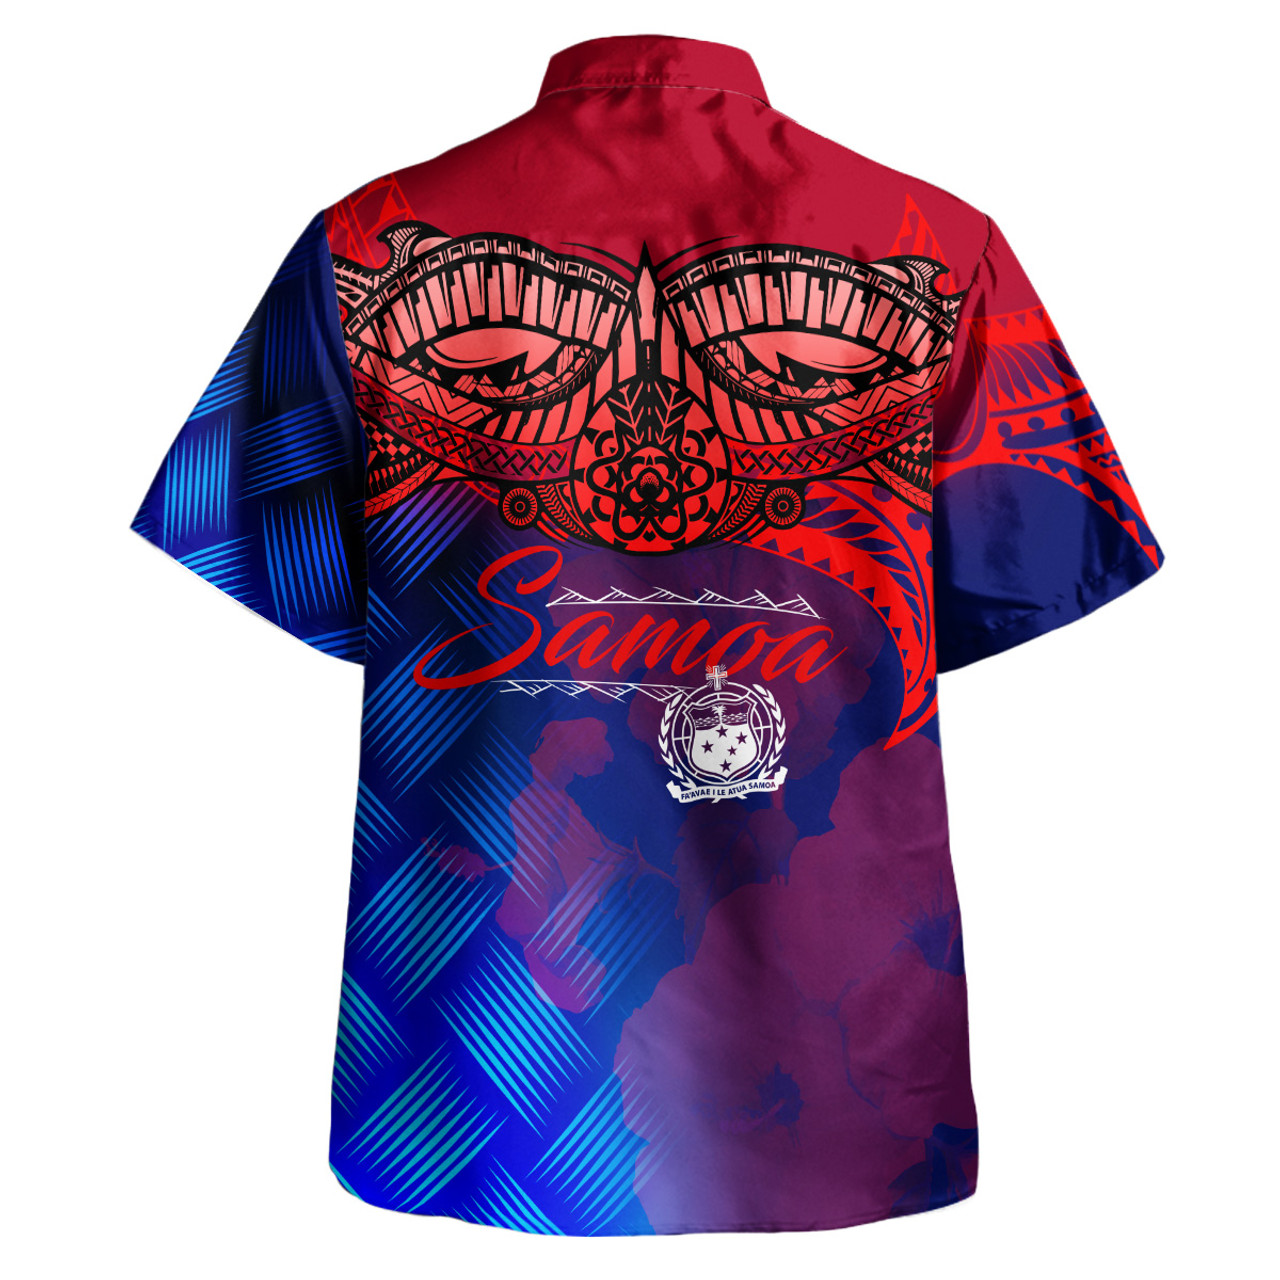 Samoa Polynesian Hawaiian Shirt - Samoa Coat Of Arms with Lauhala Tribal Pattern